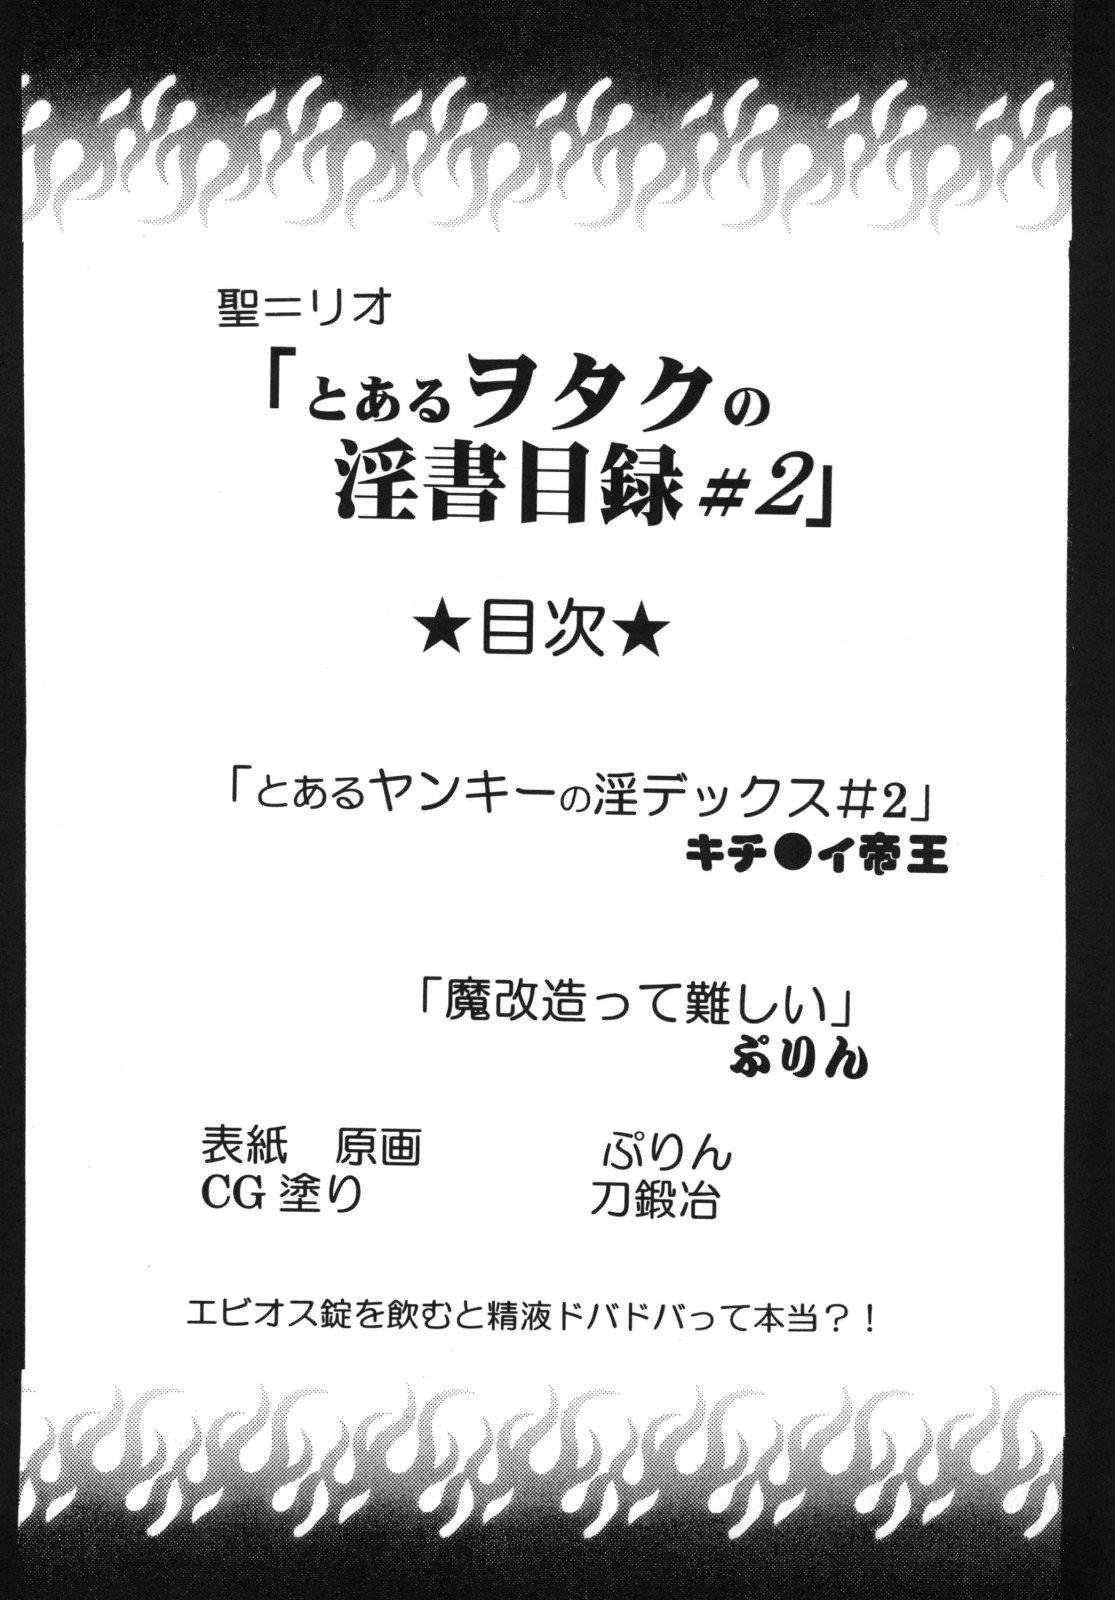 Chicks Toaru Otaku no Index #2 - Toaru majutsu no index Mum - Page 4